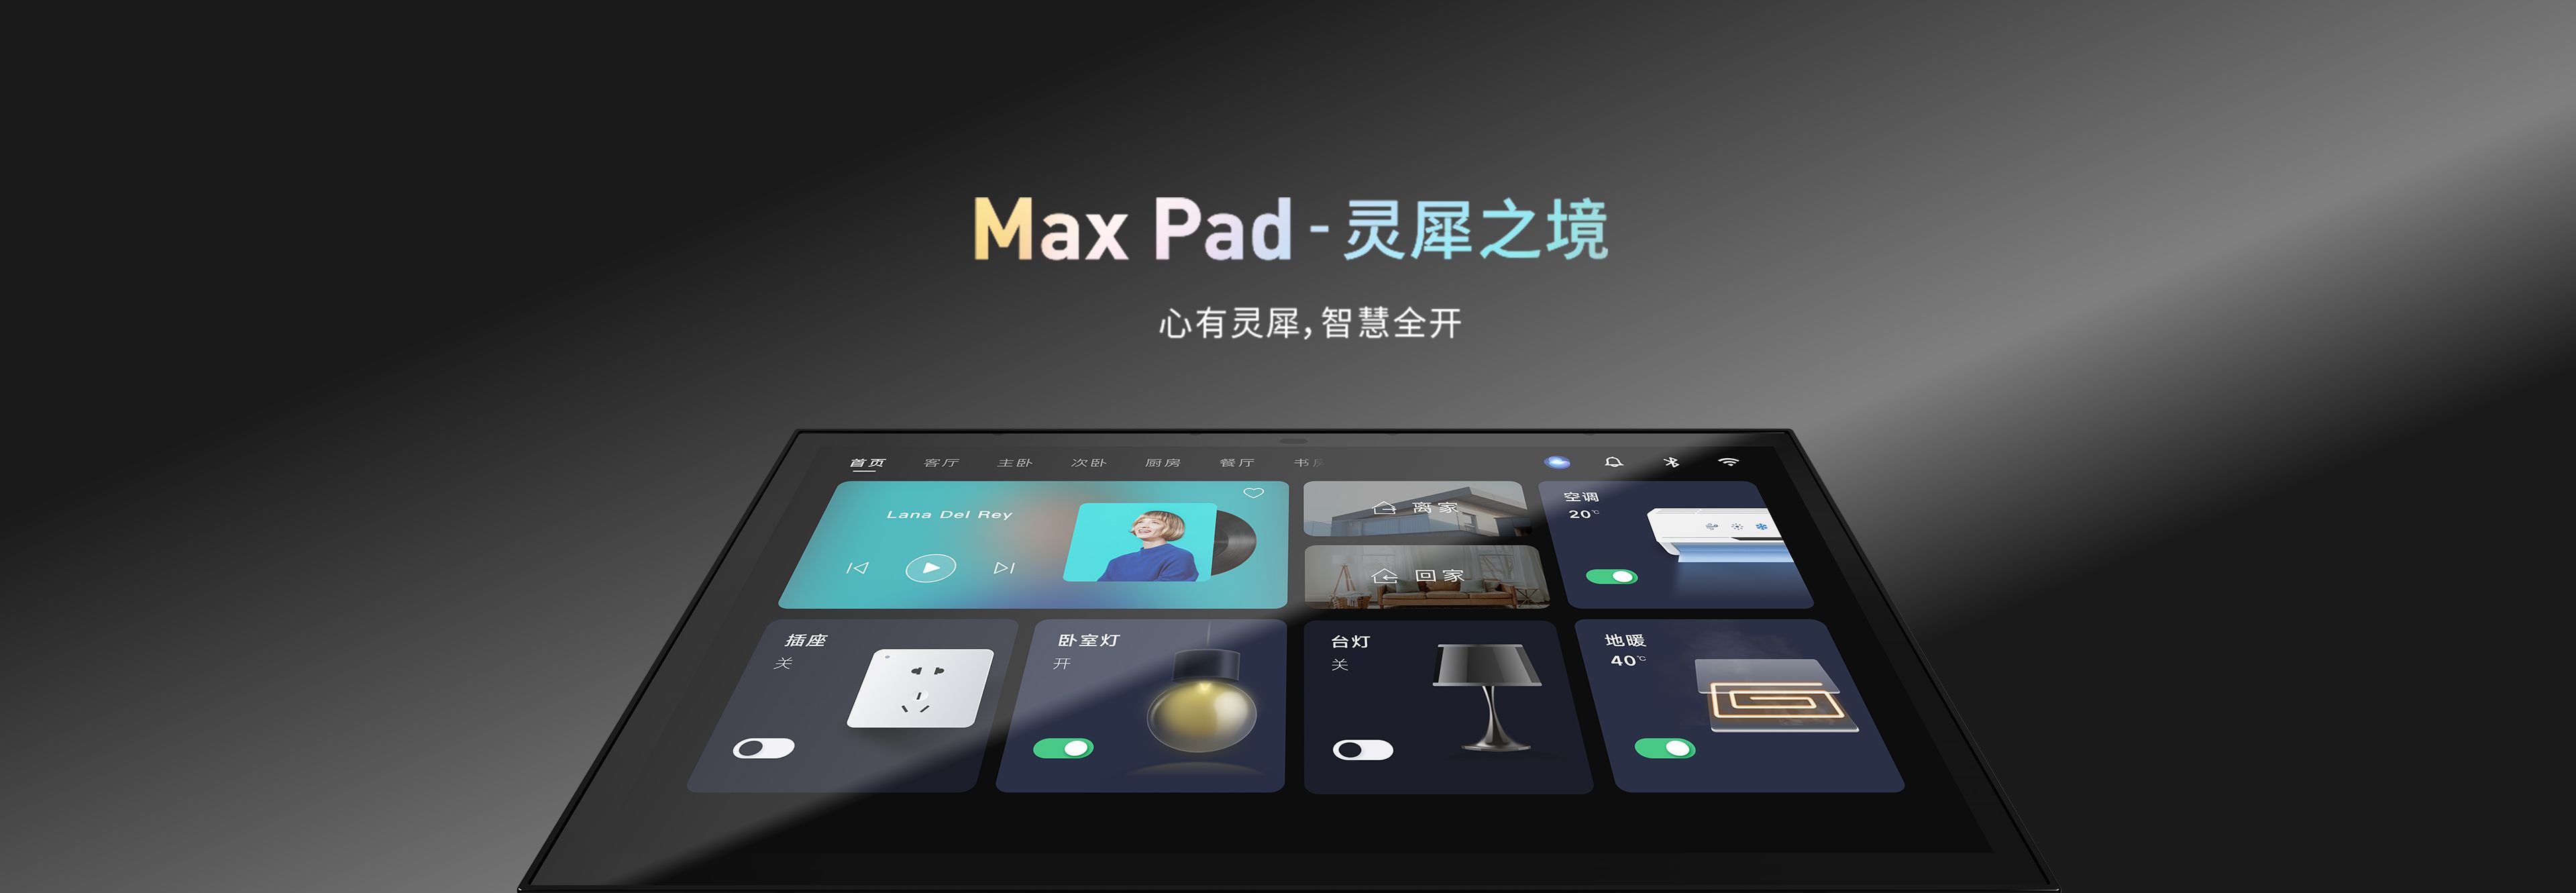 Max Pad PC.jpg